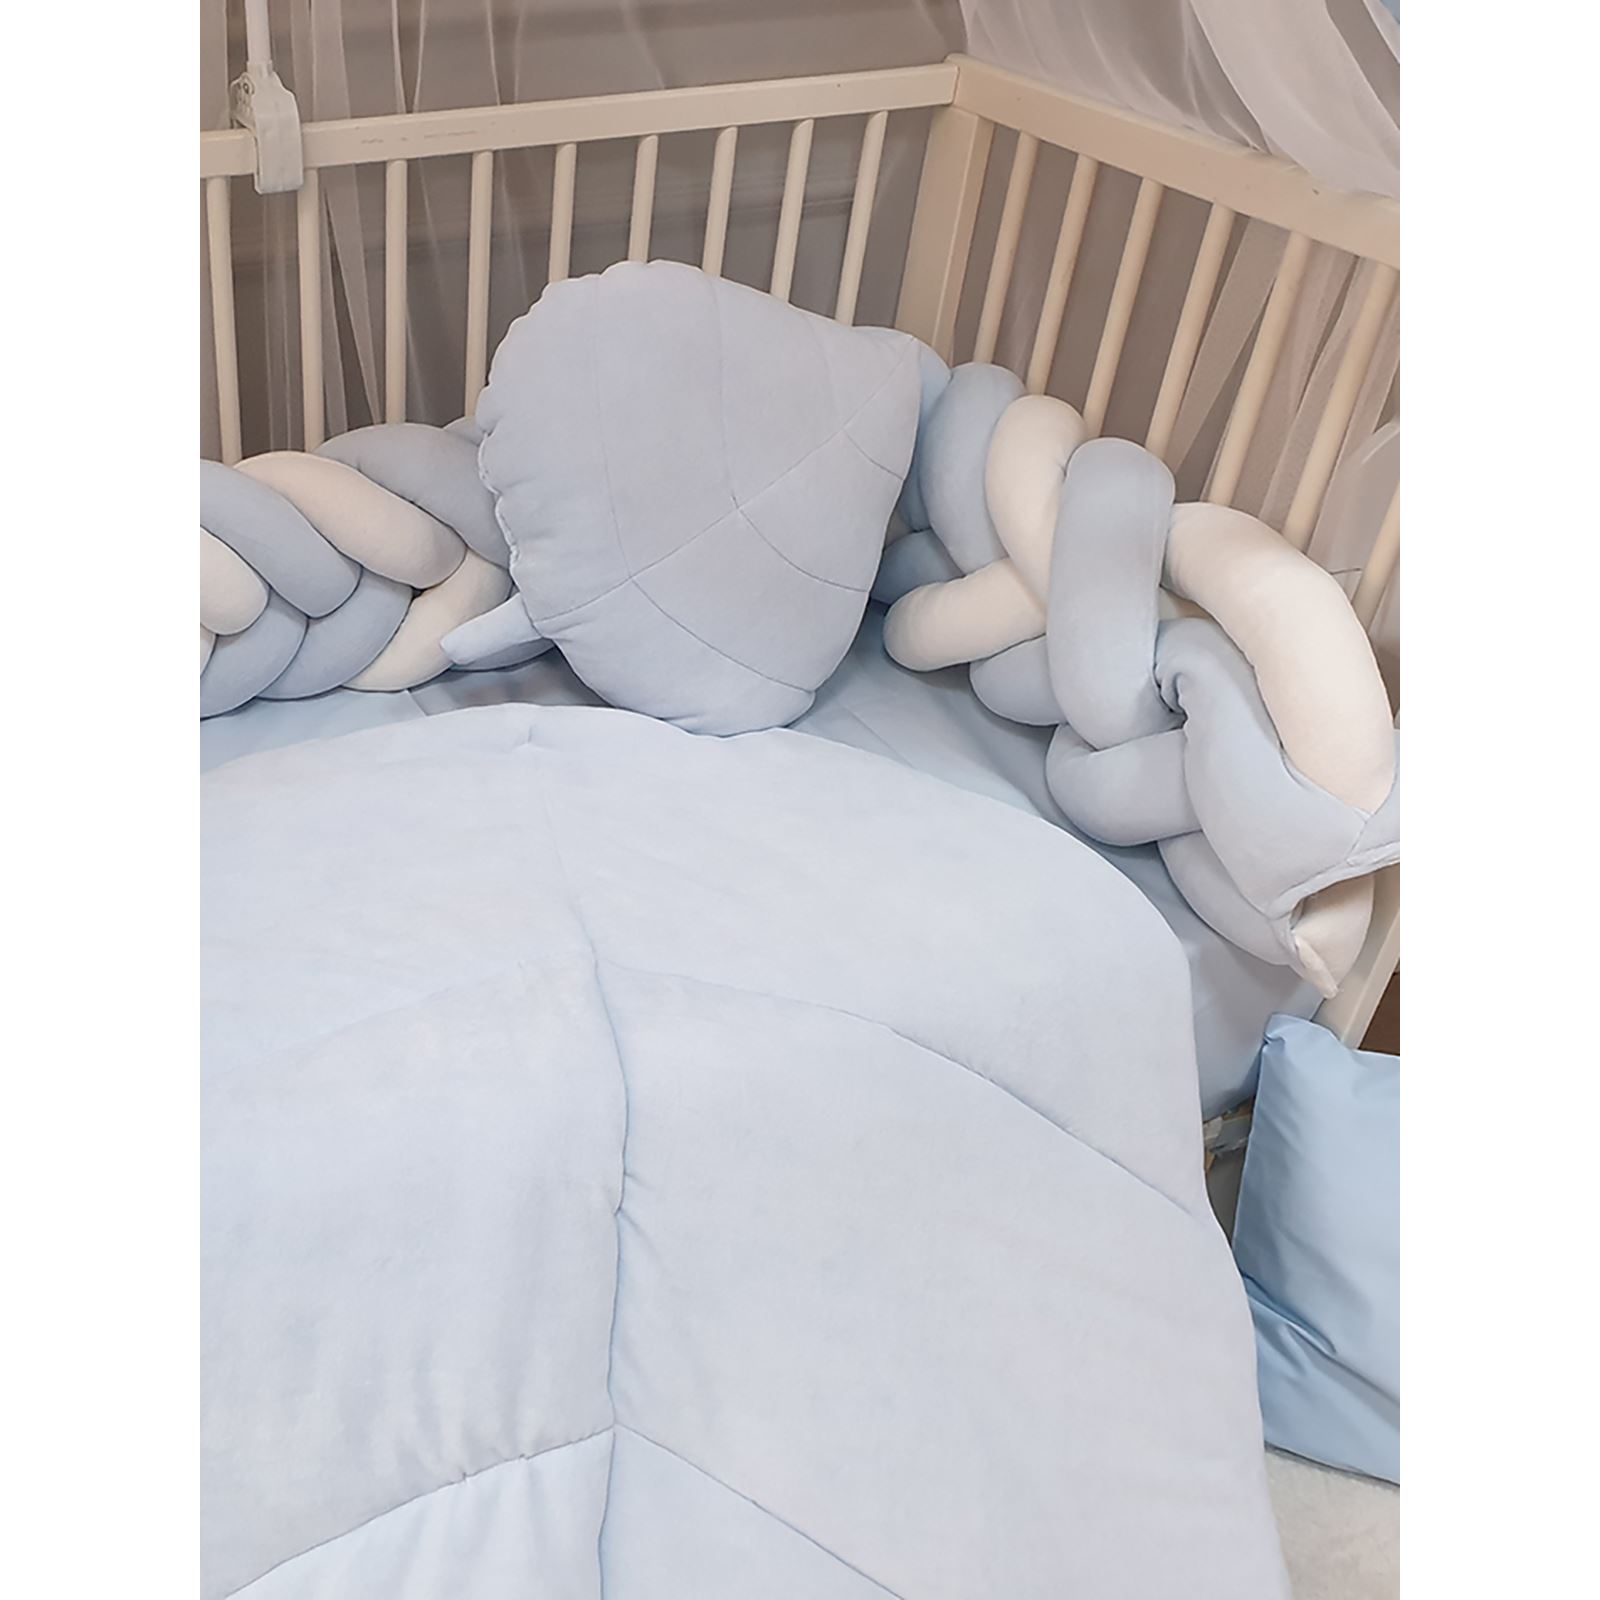 Yuar Baby Kadife 5 li Mısır Örgü Beşik Uyku Seti Mavi 80x130 cm